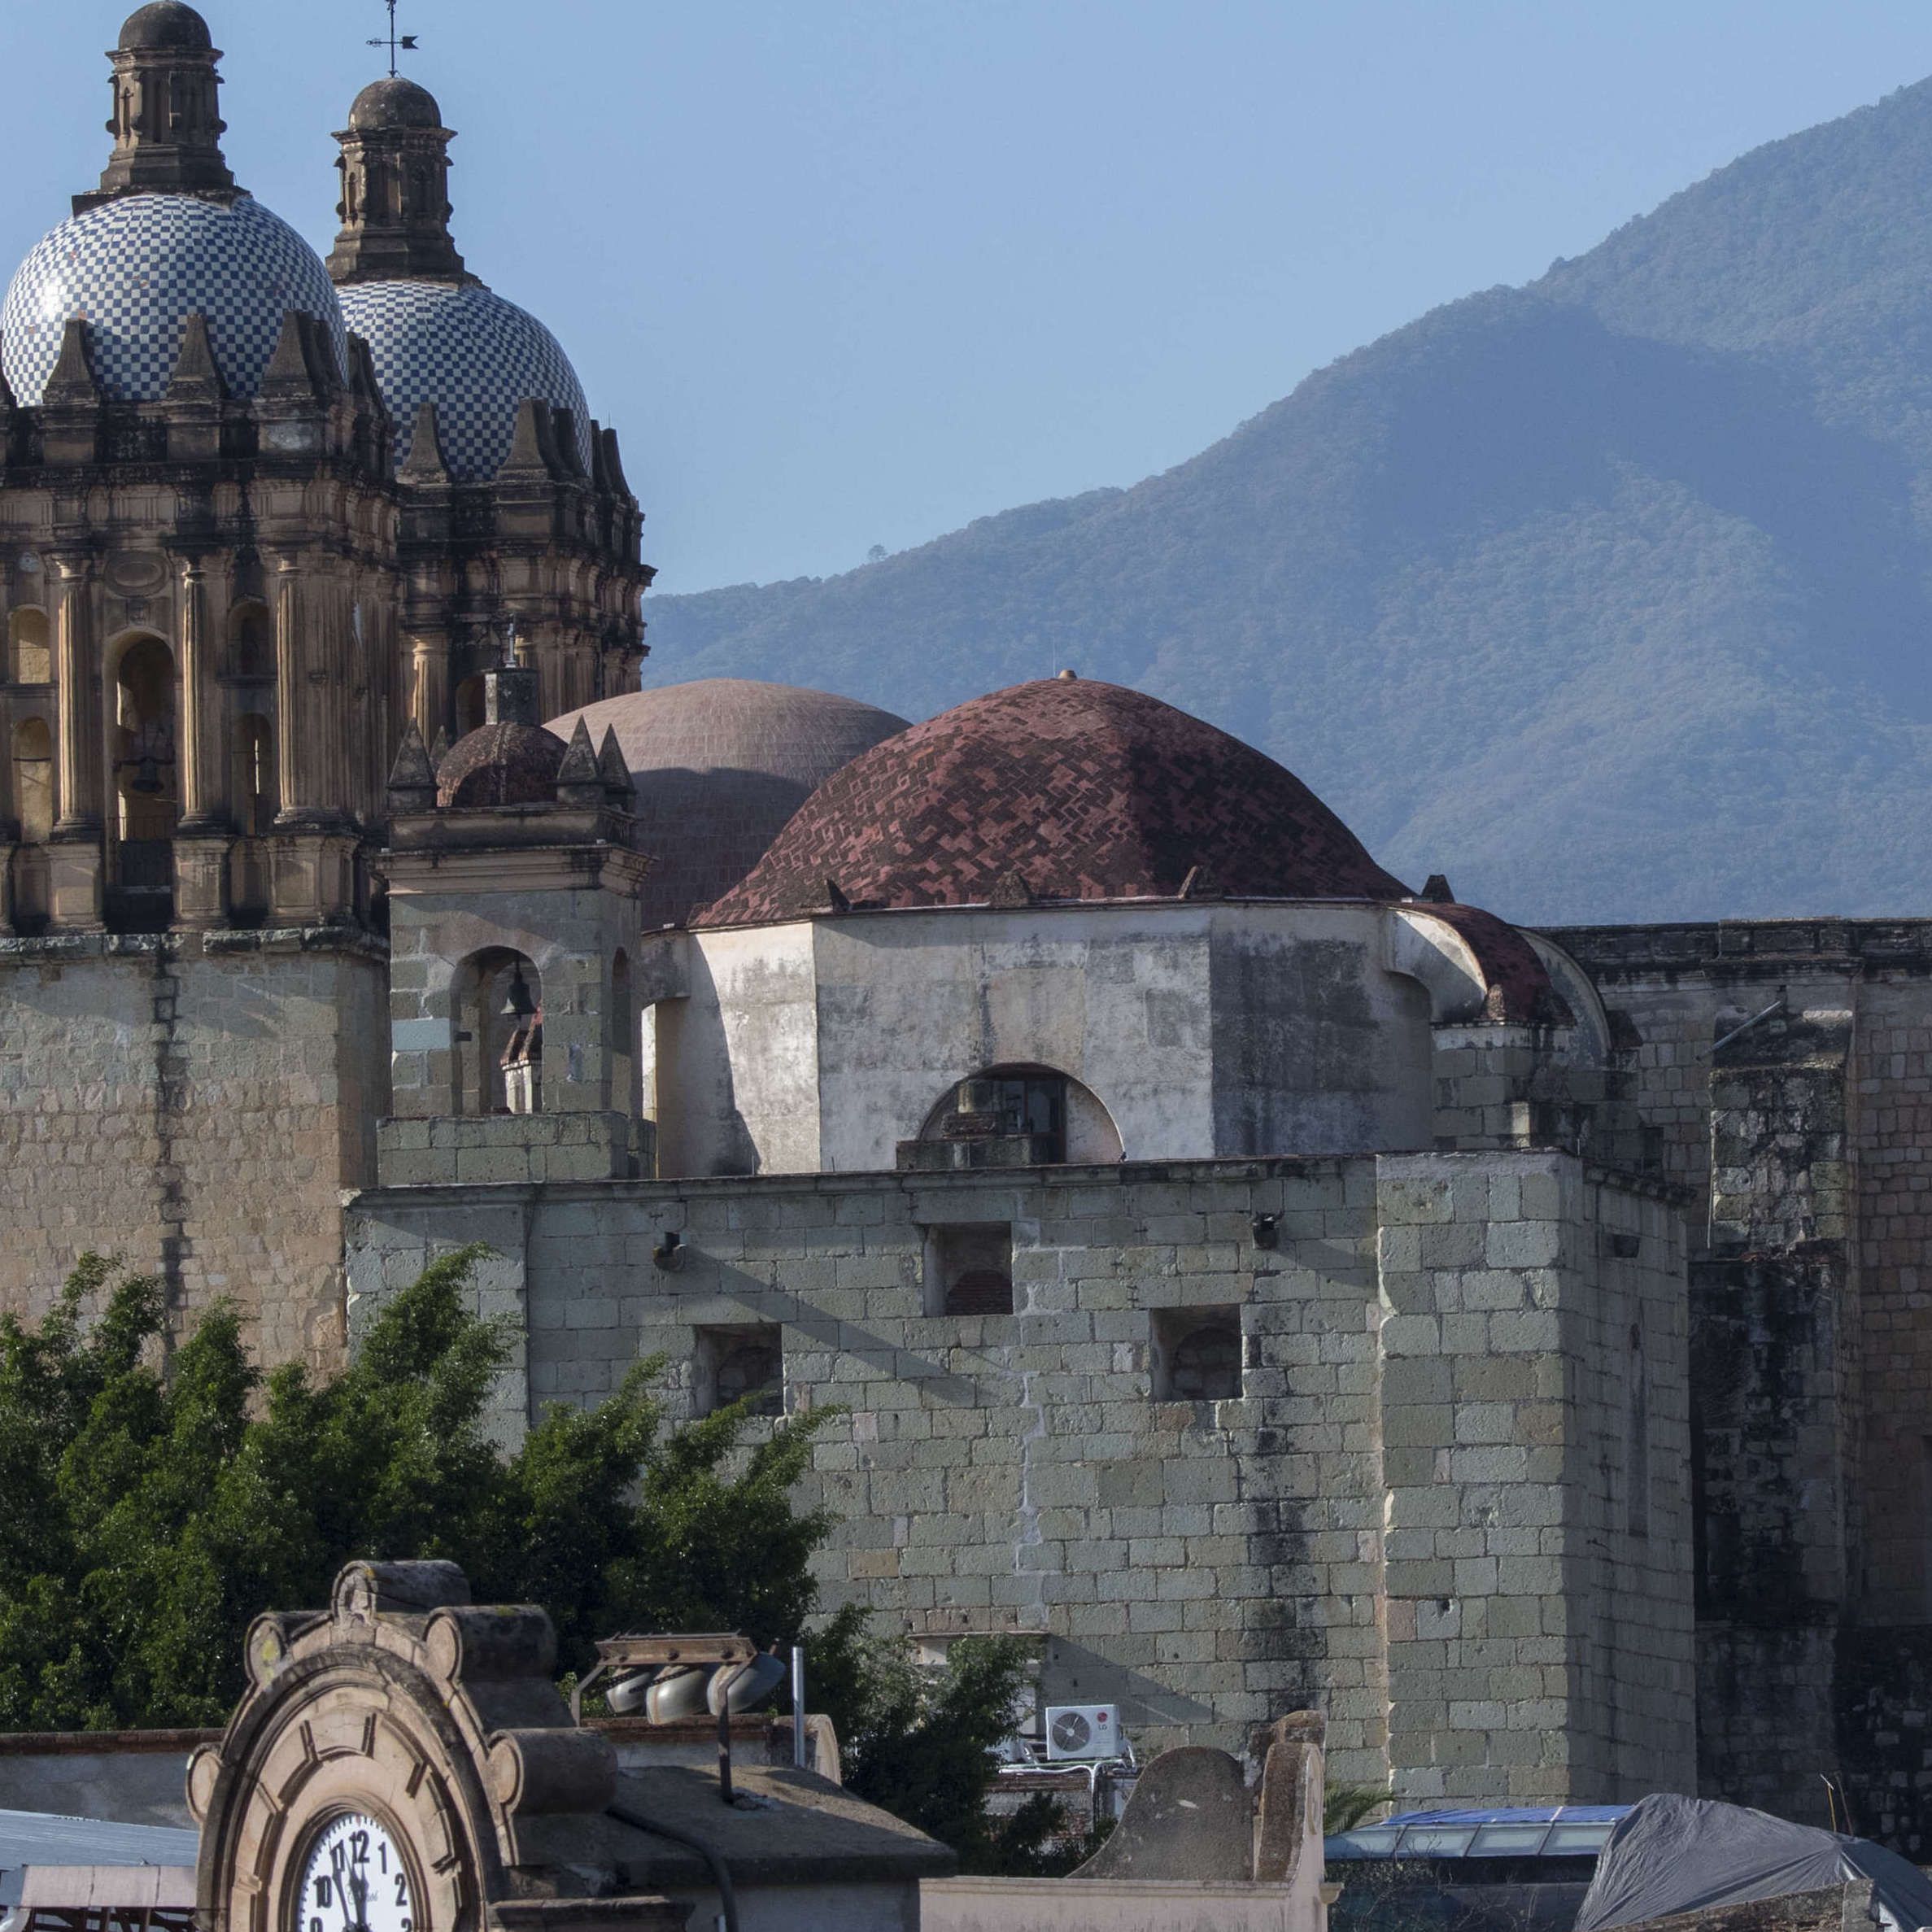 View of the Church of Santo Domingo de Guzman in the city of Oaxaca